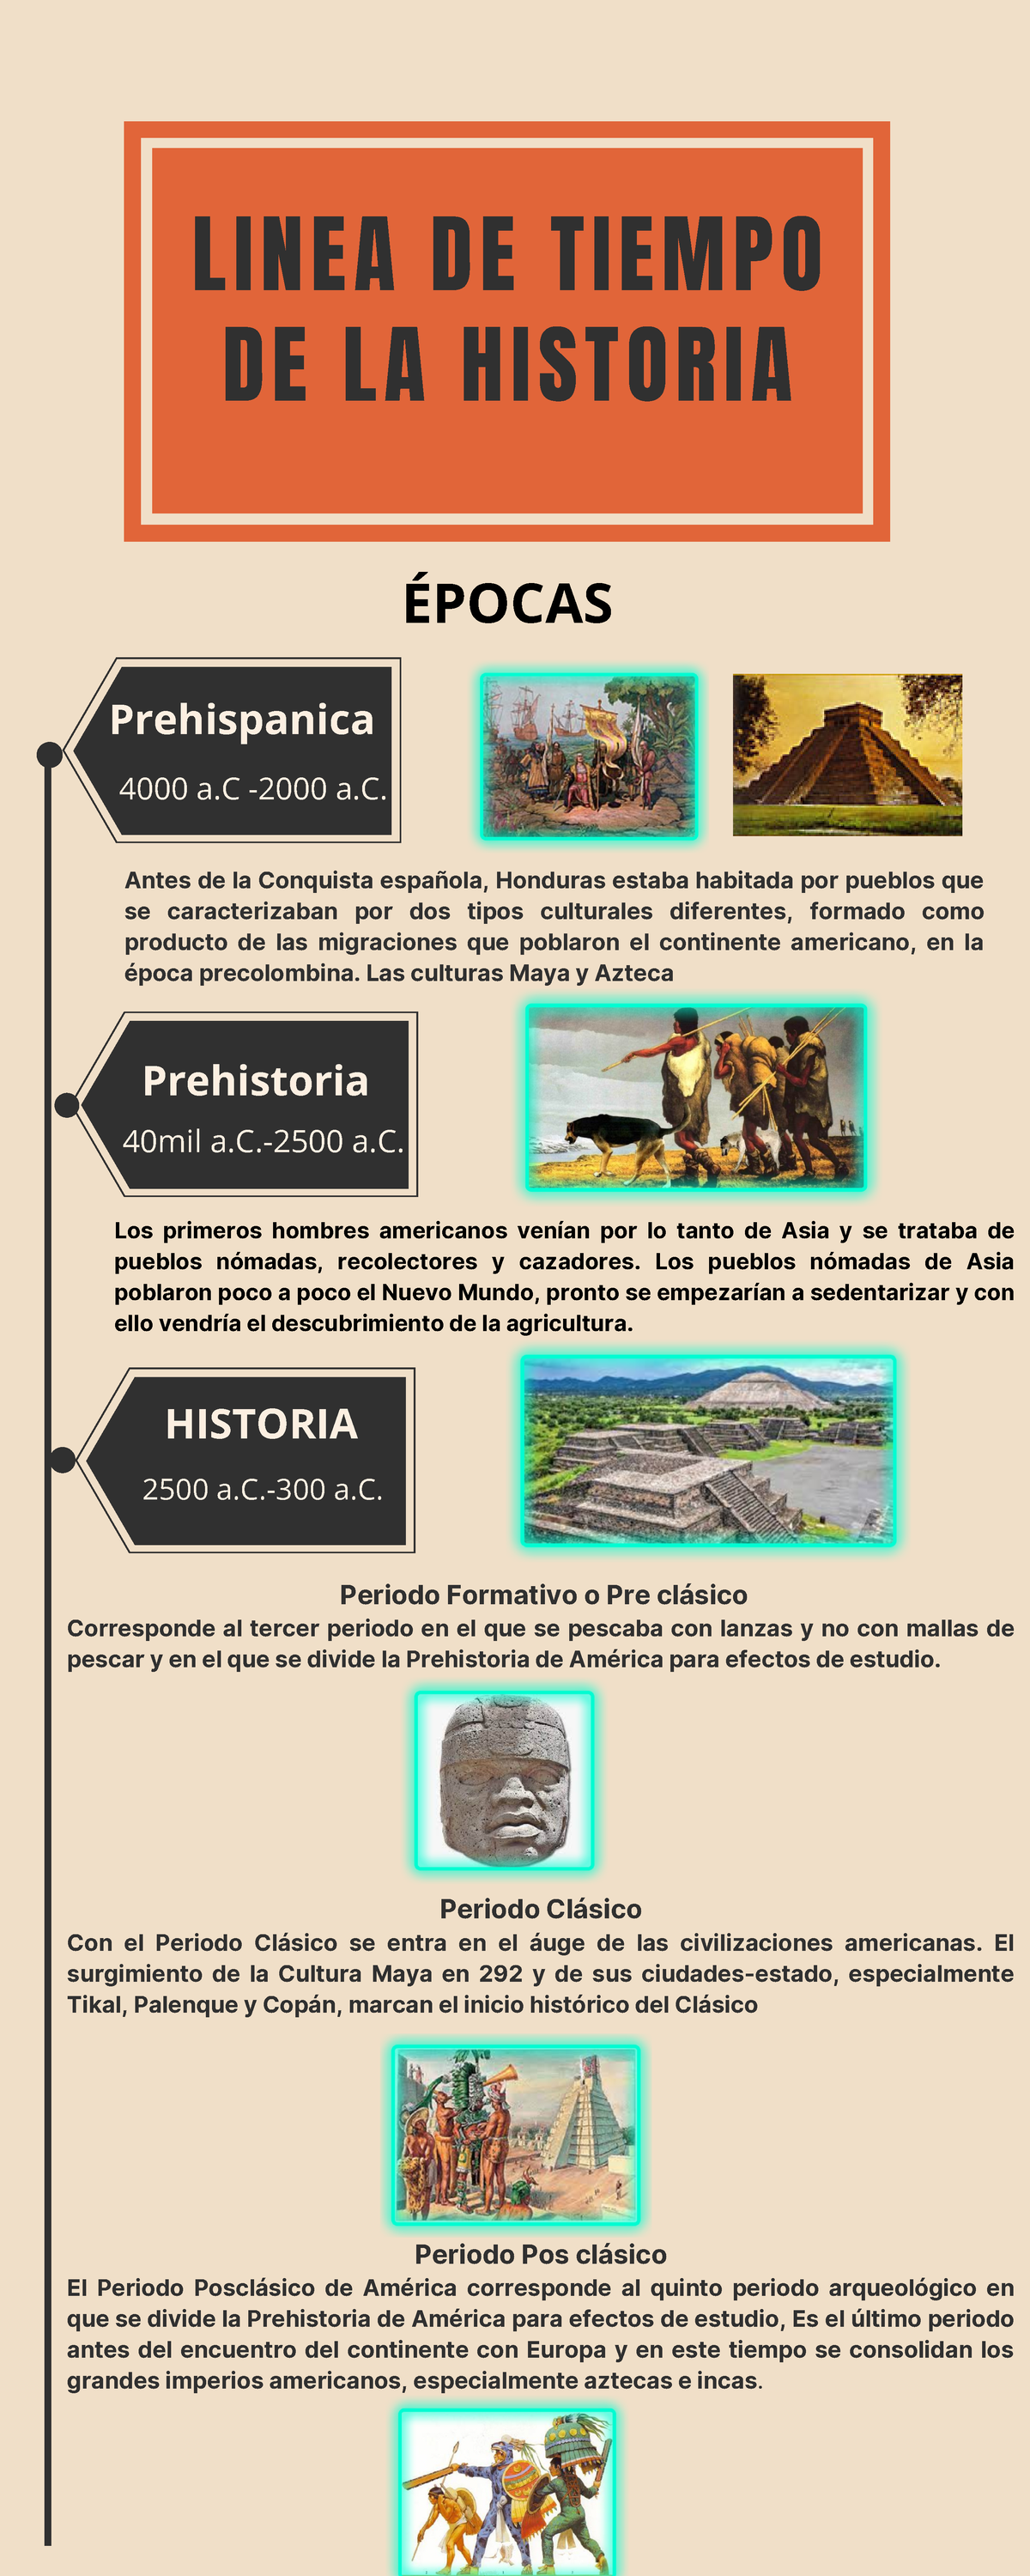 Linea De Tiempo De La Historia De Honduras Periodo Formativo O Pre